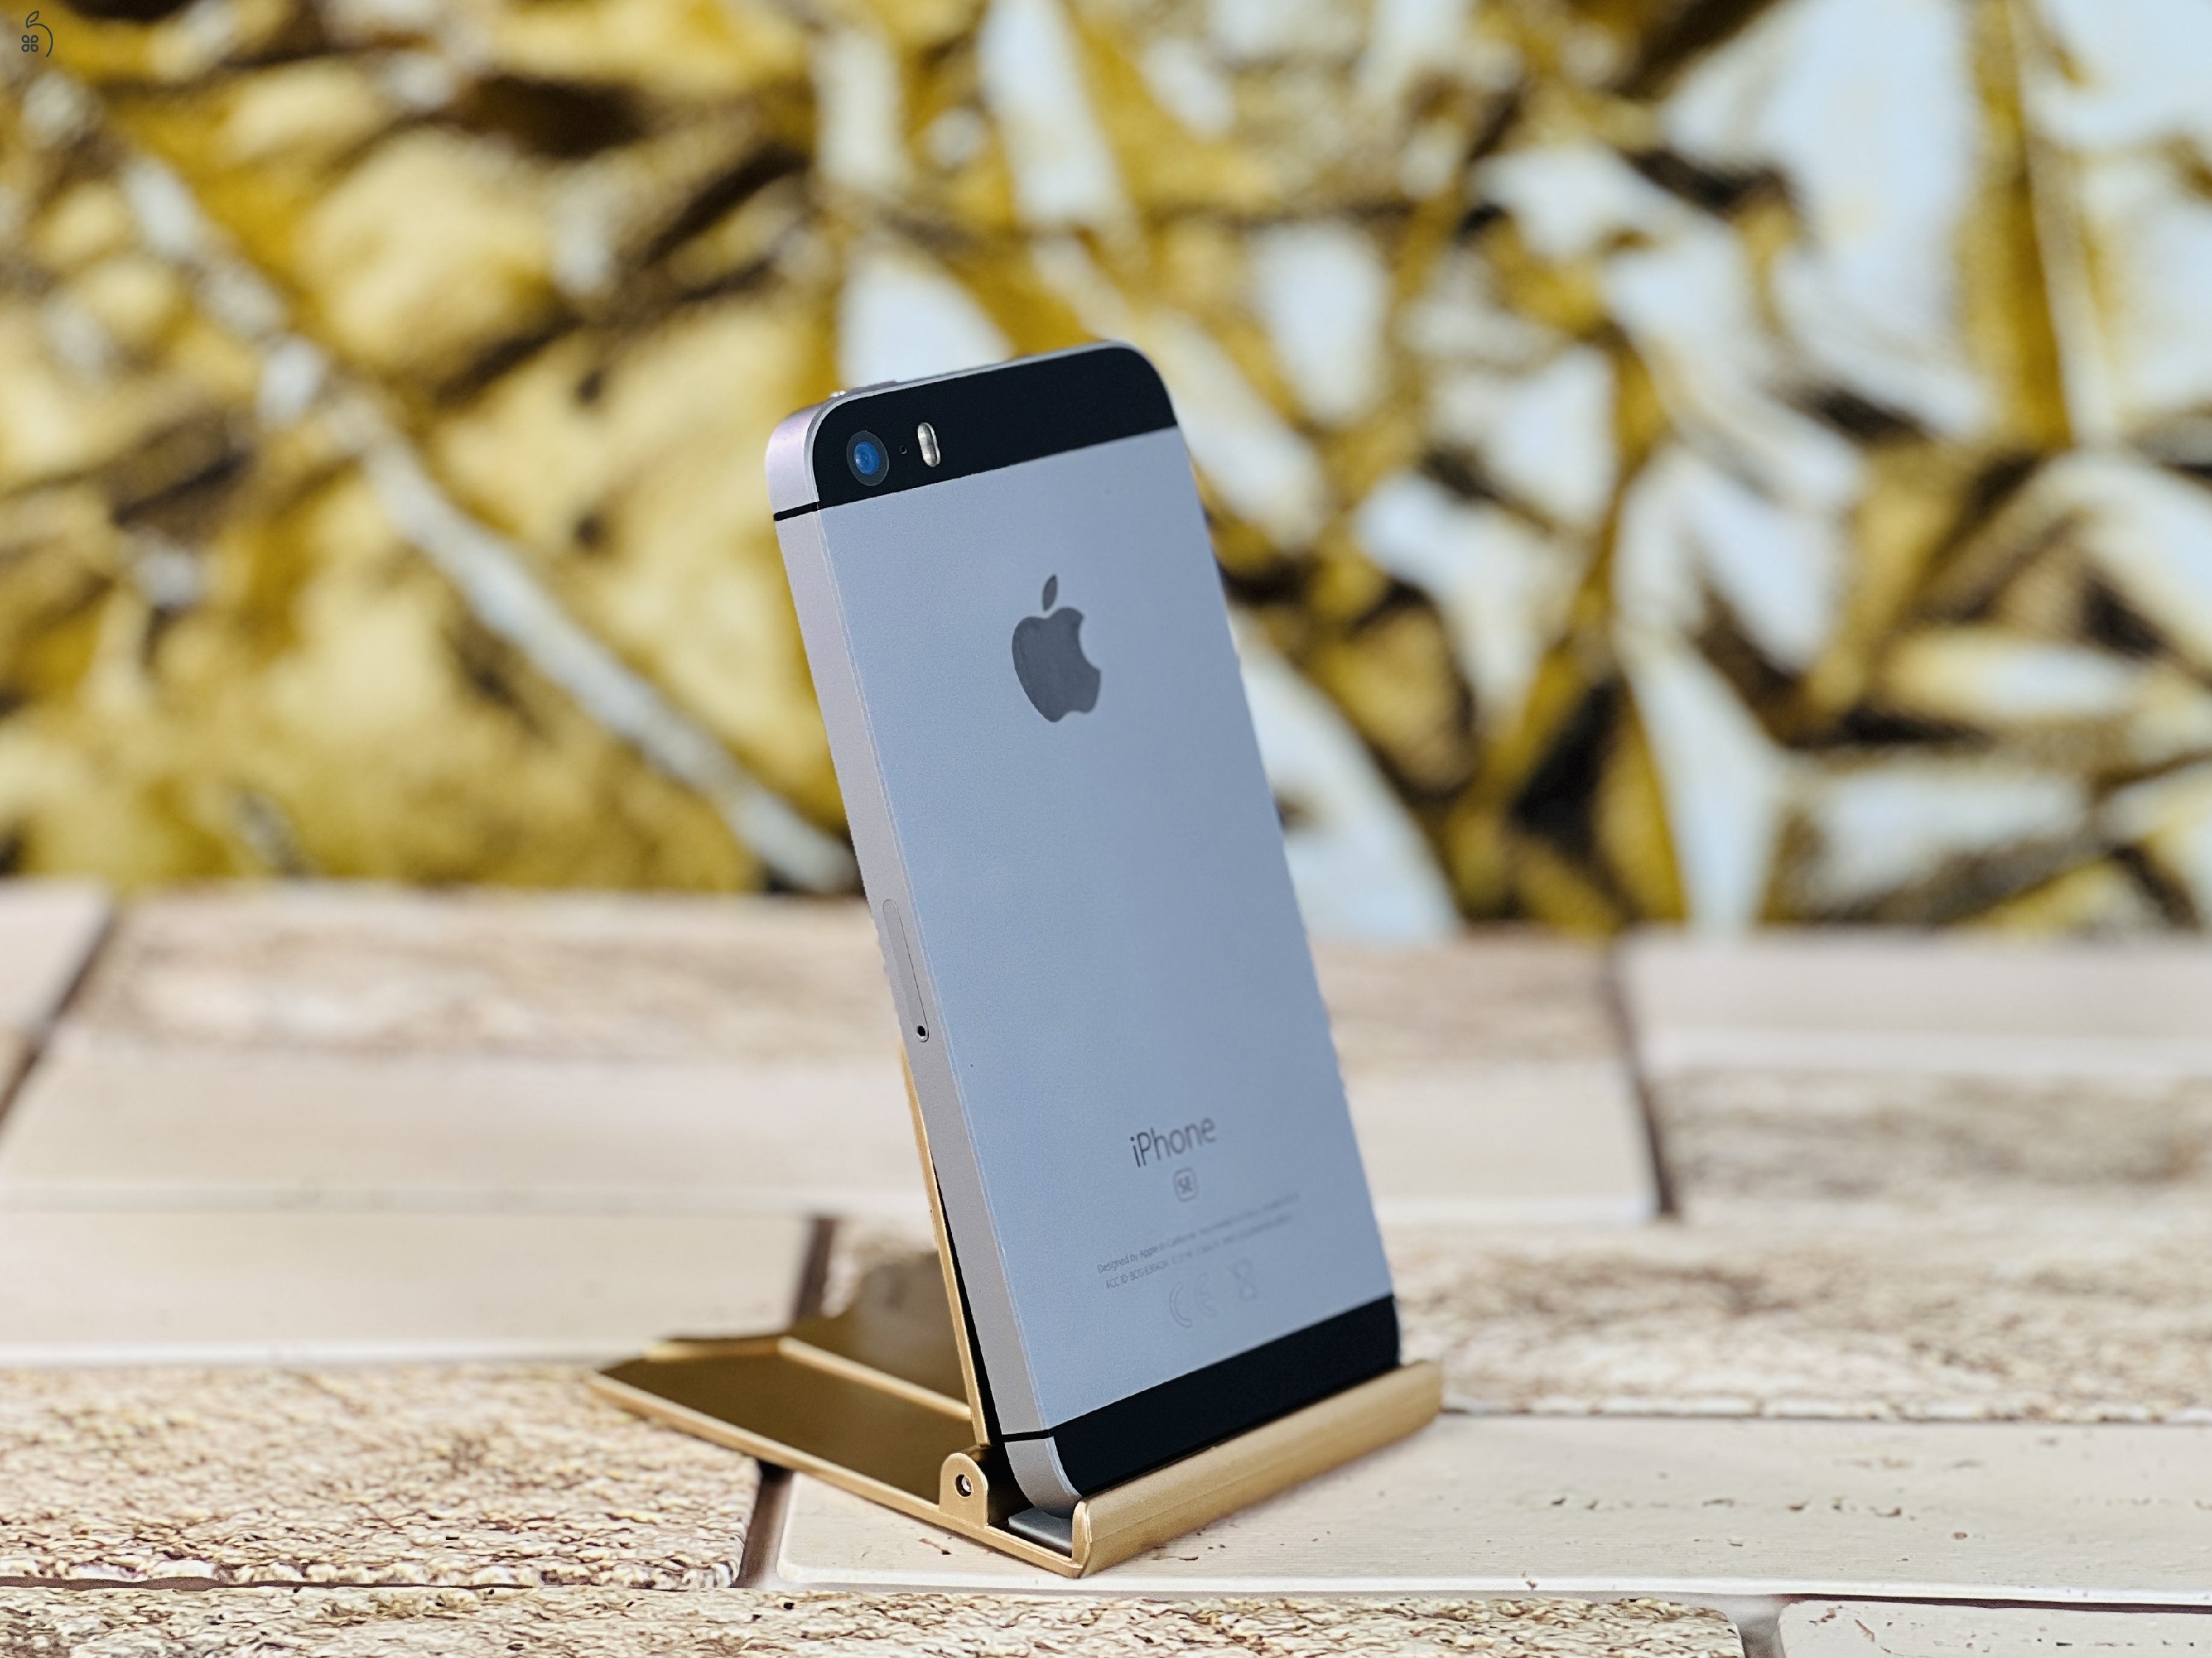 Eladó iPhone SE (2016) 64 GB Space Gray 100% aksi szép állapotú - 12 HÓ GARANCIA - L4428